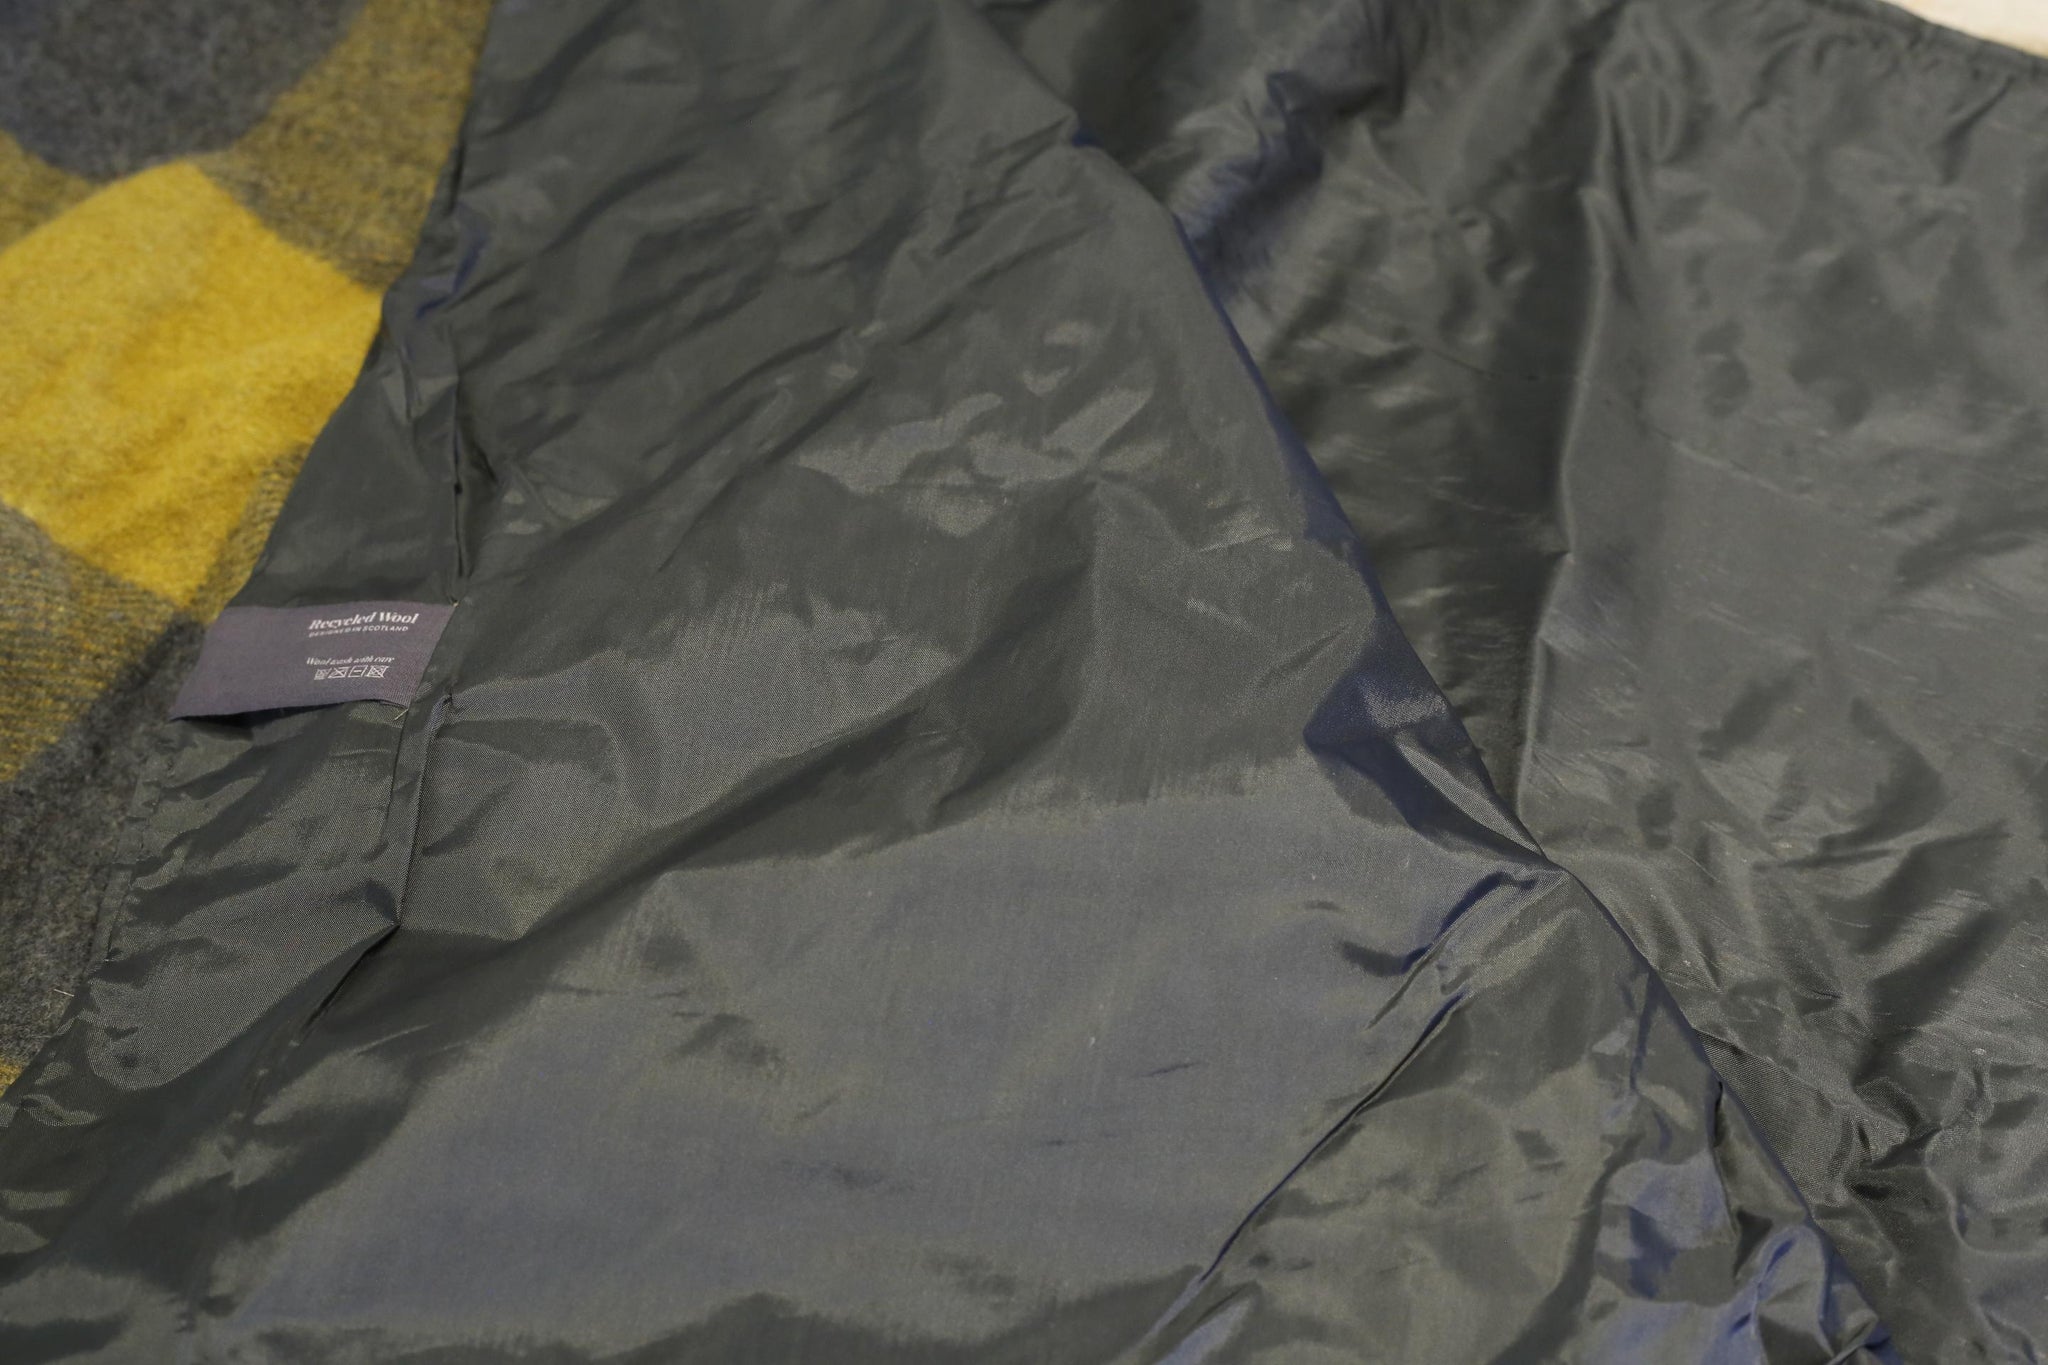 Recycled Wool Waterproof Picnic Blanket in yellow grey tartan